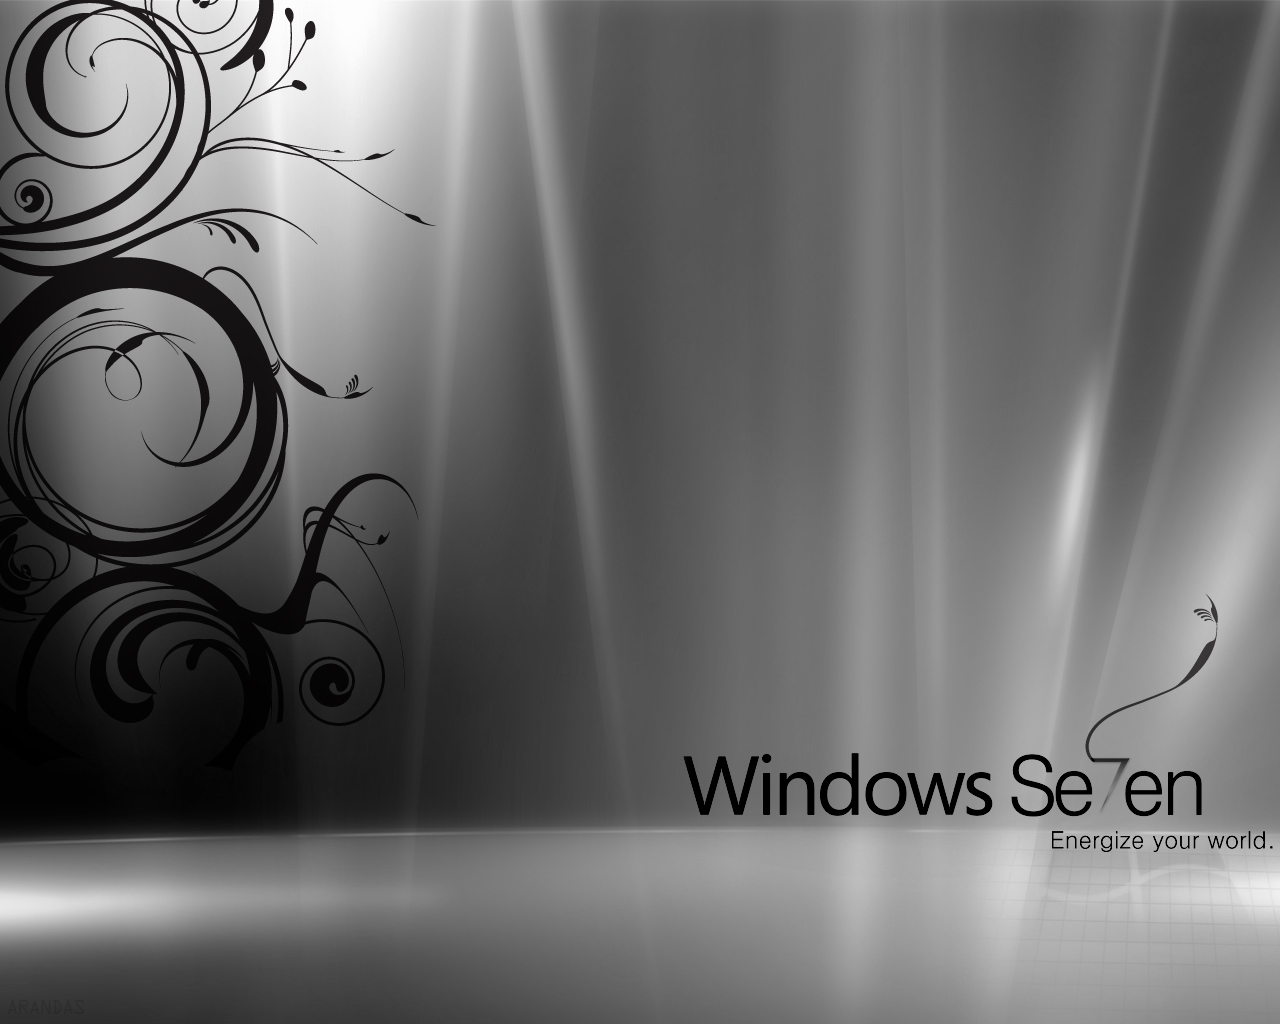 windows 7 wallpaper, windows7 wallpapers, 바탕화면, 바탕화면 이미지, 윈도우7, 윈도우7 바탕화면, 윈도우즈 7 바탕화면, 윈도우즈 바탕화면, 윈도우즈7 바탕화면, 추천 바탕화면, Wallpapers, HD Wallpapers